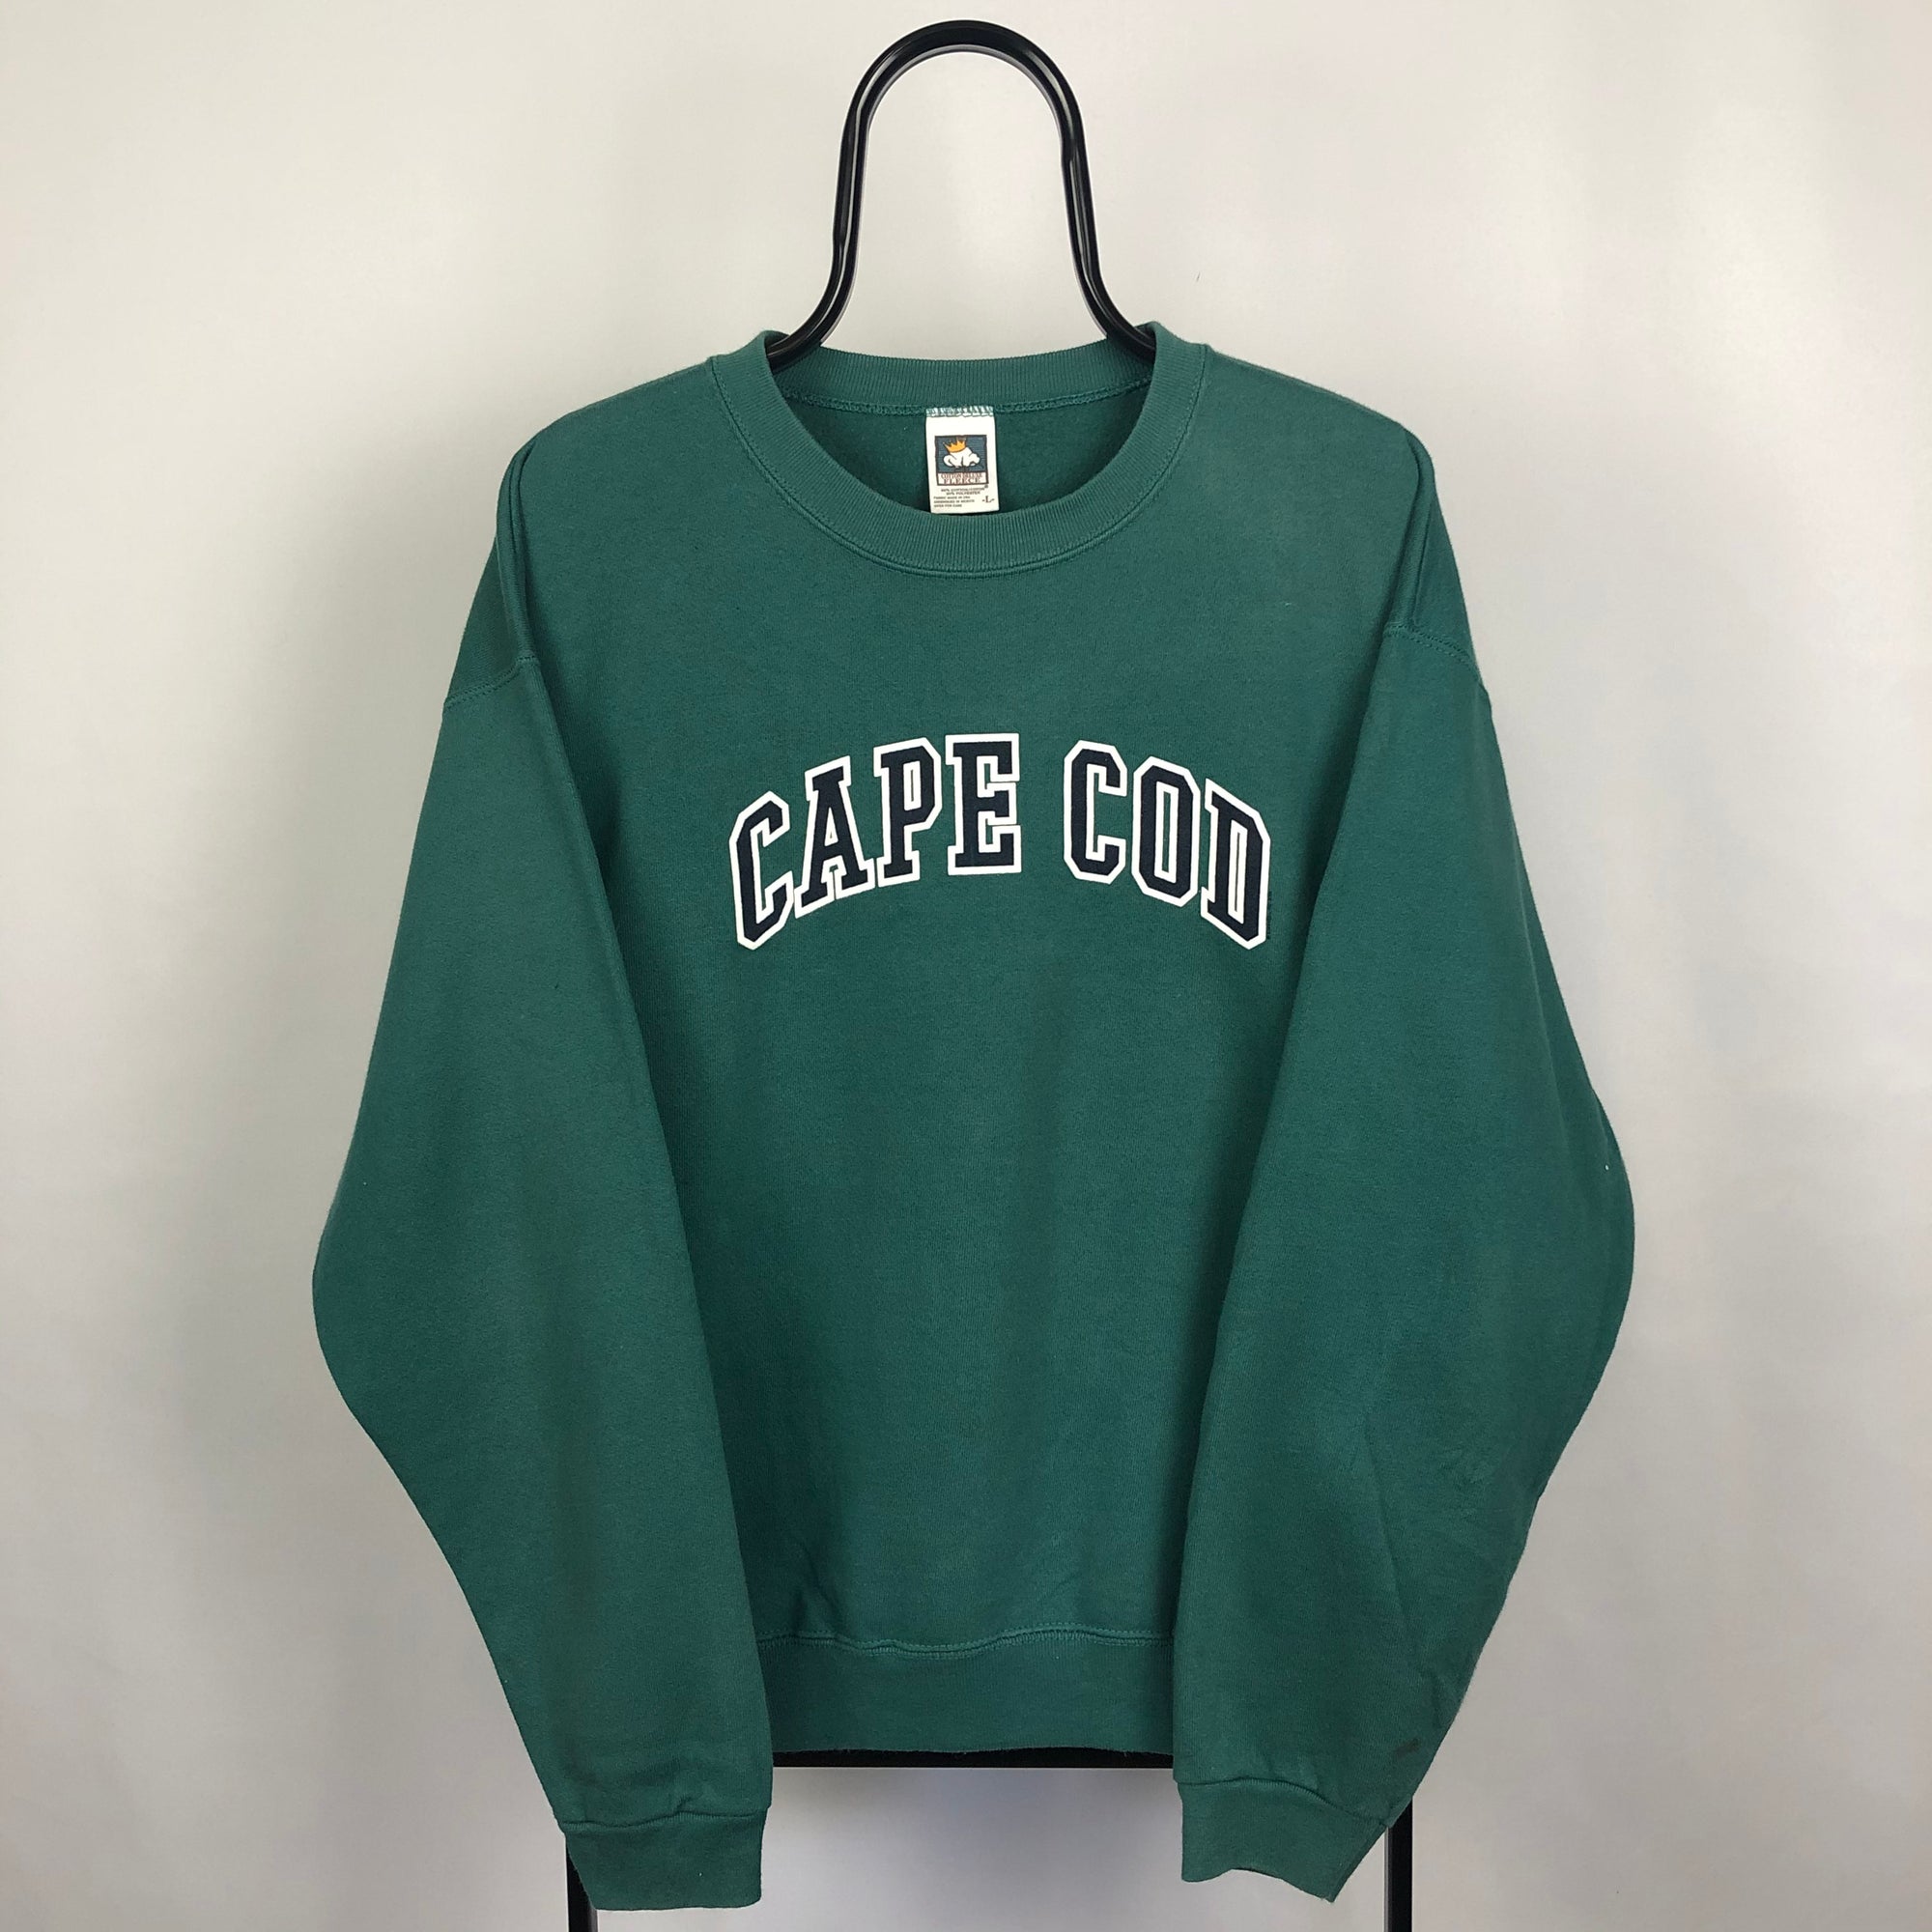 Vintage 'Cape Cod' Sweatshirt - Men's Large/Women's XL